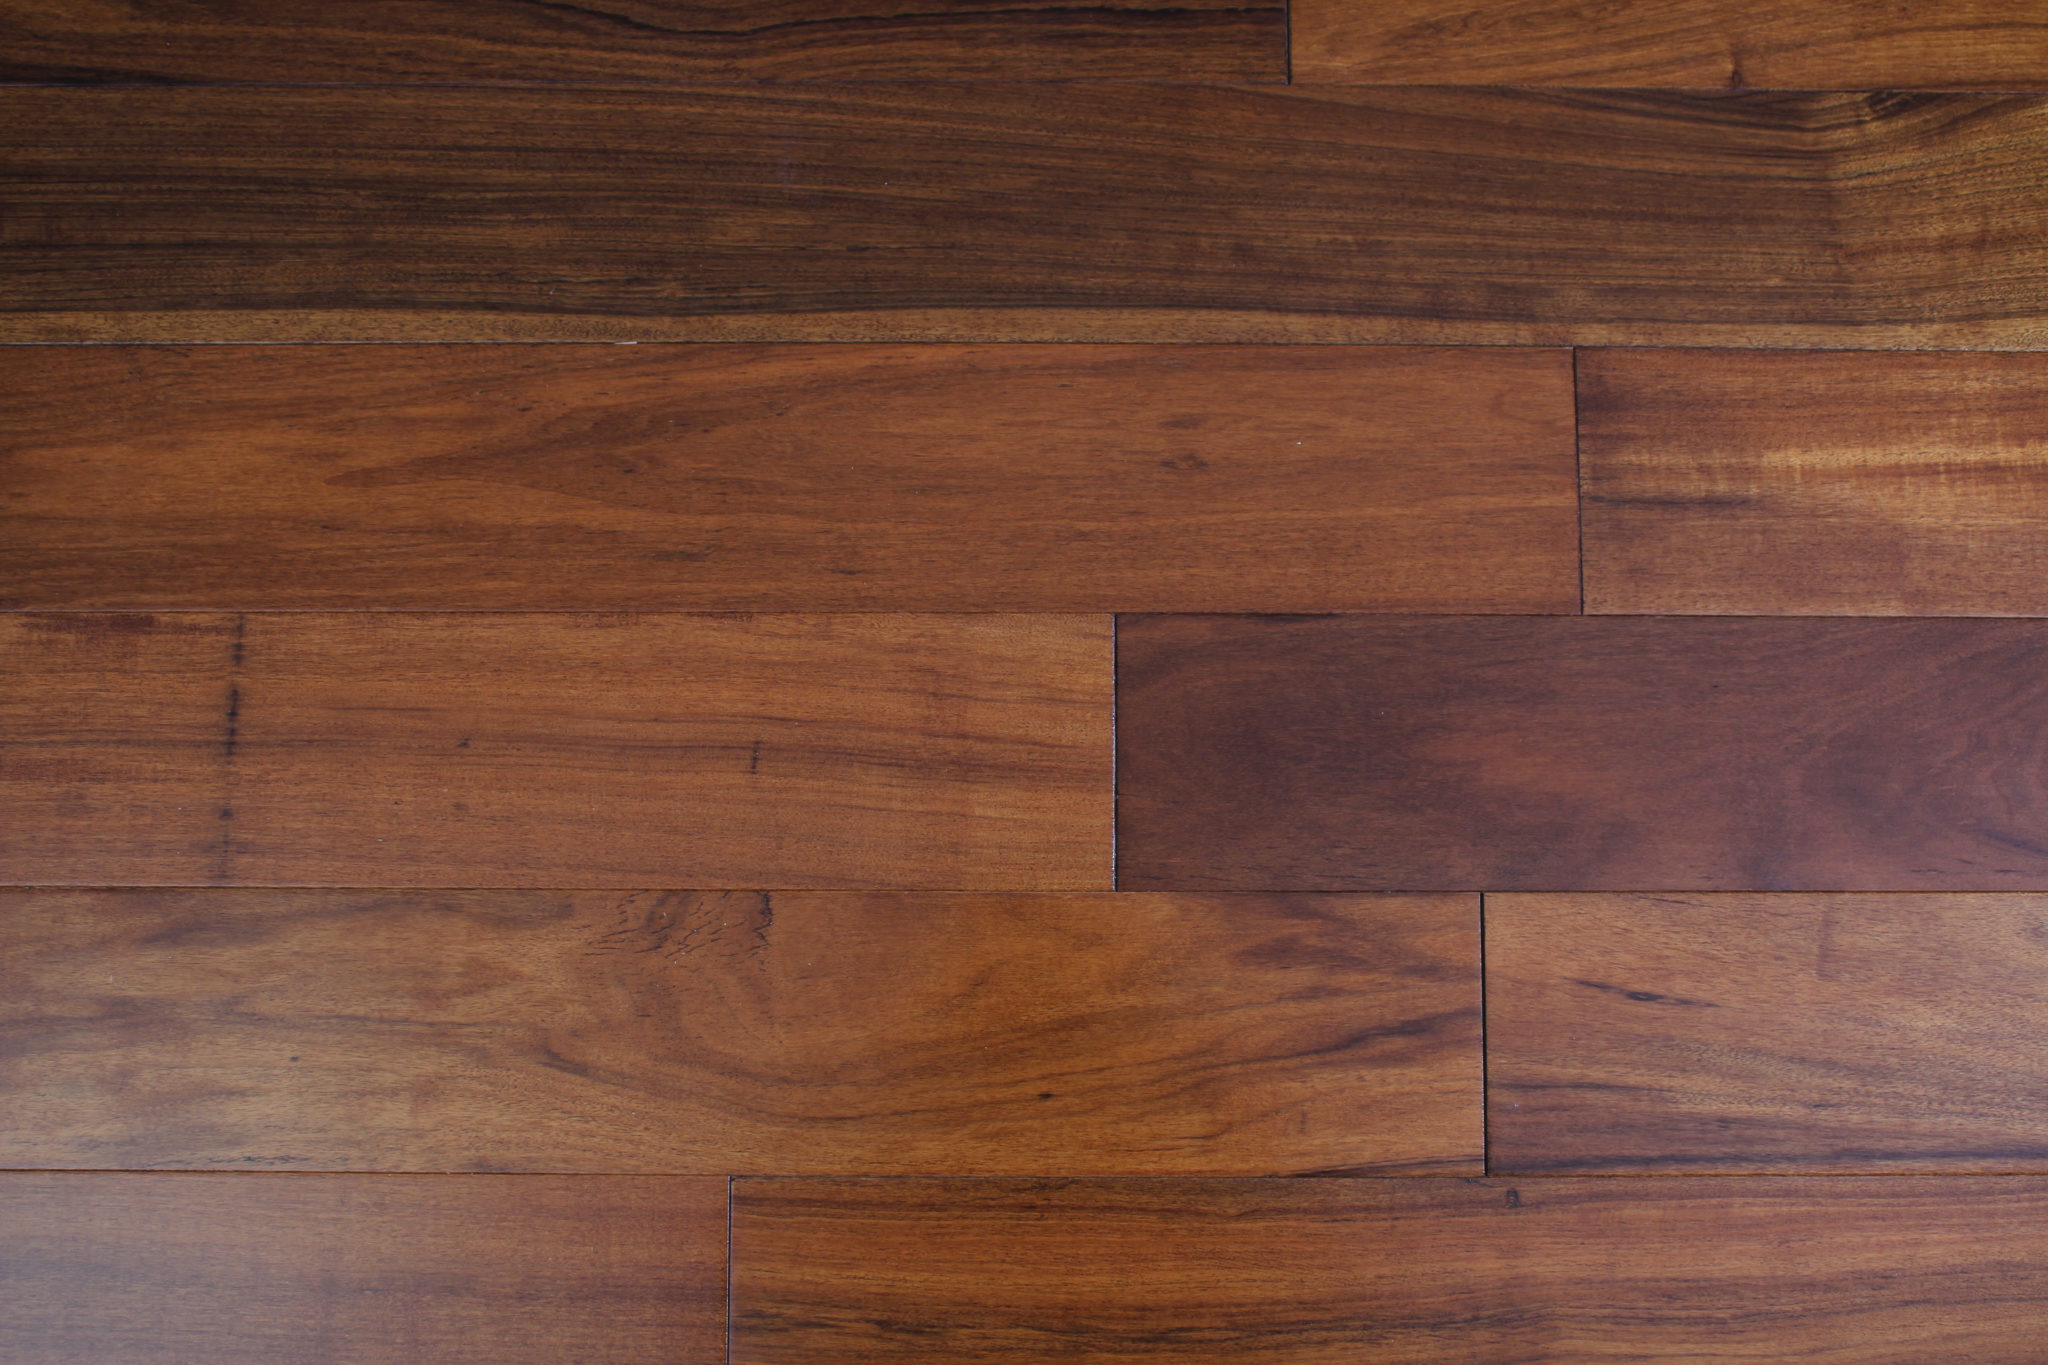 Wood Floors Engineered Hardwood, Classic Hardwood Floors